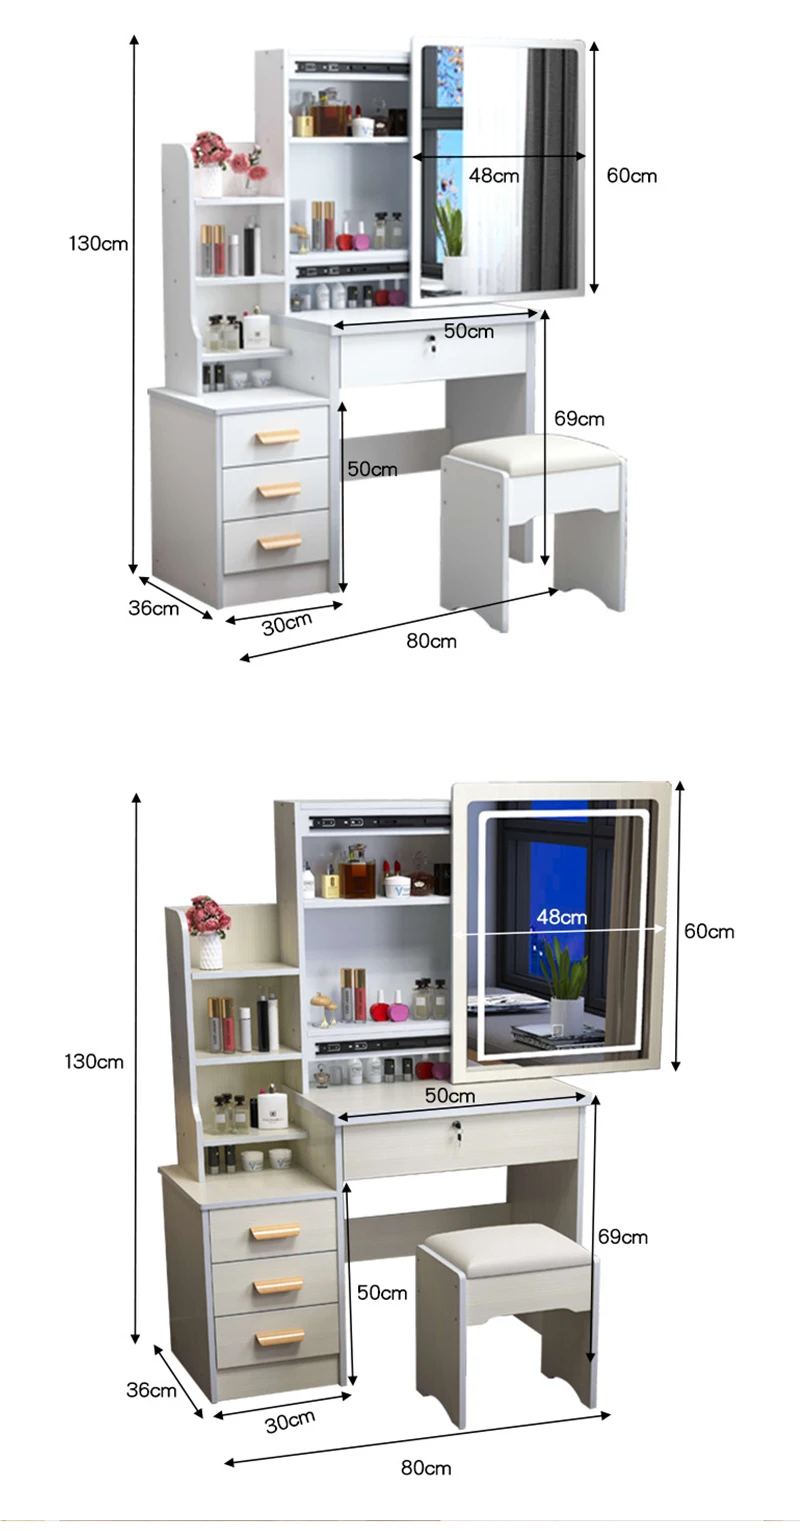 Cómo instalar un tocador flotante - Conocimiento - Noticias - Hangzhou  Rebon Cabinets Co., Ltd